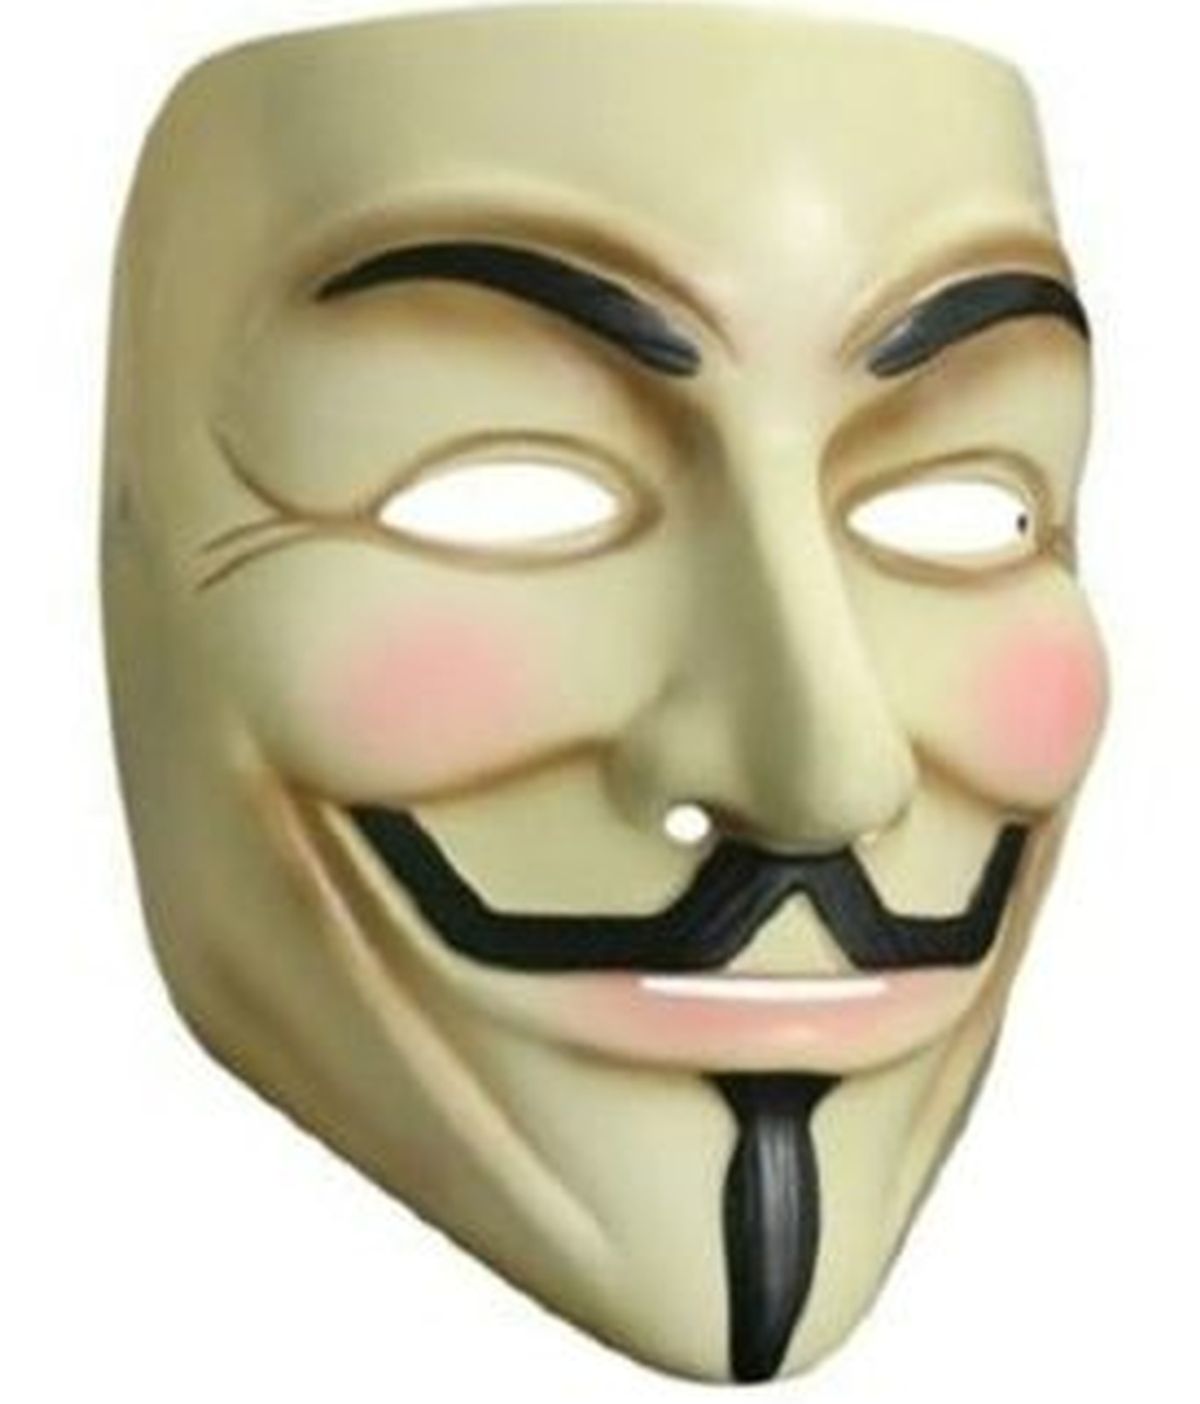 Los derechos de imagen de la máscara pertenecen a Time Warner, una de las compañías de medios más grandes a nivel mundial.